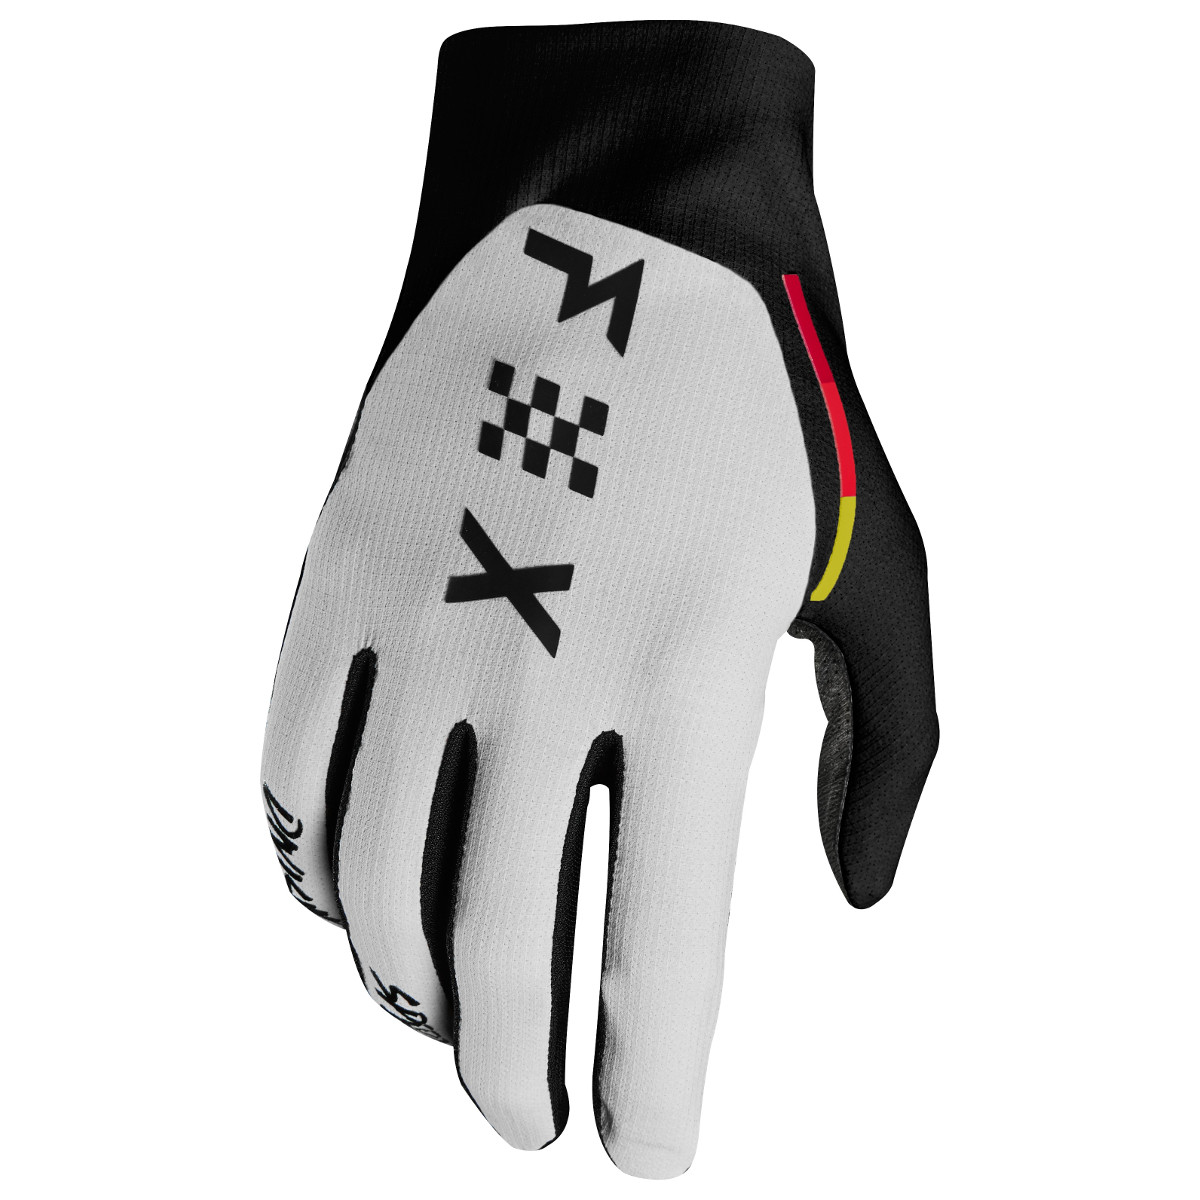 Fox Gloves Flexair Light Grey - Limited Edition Rodka